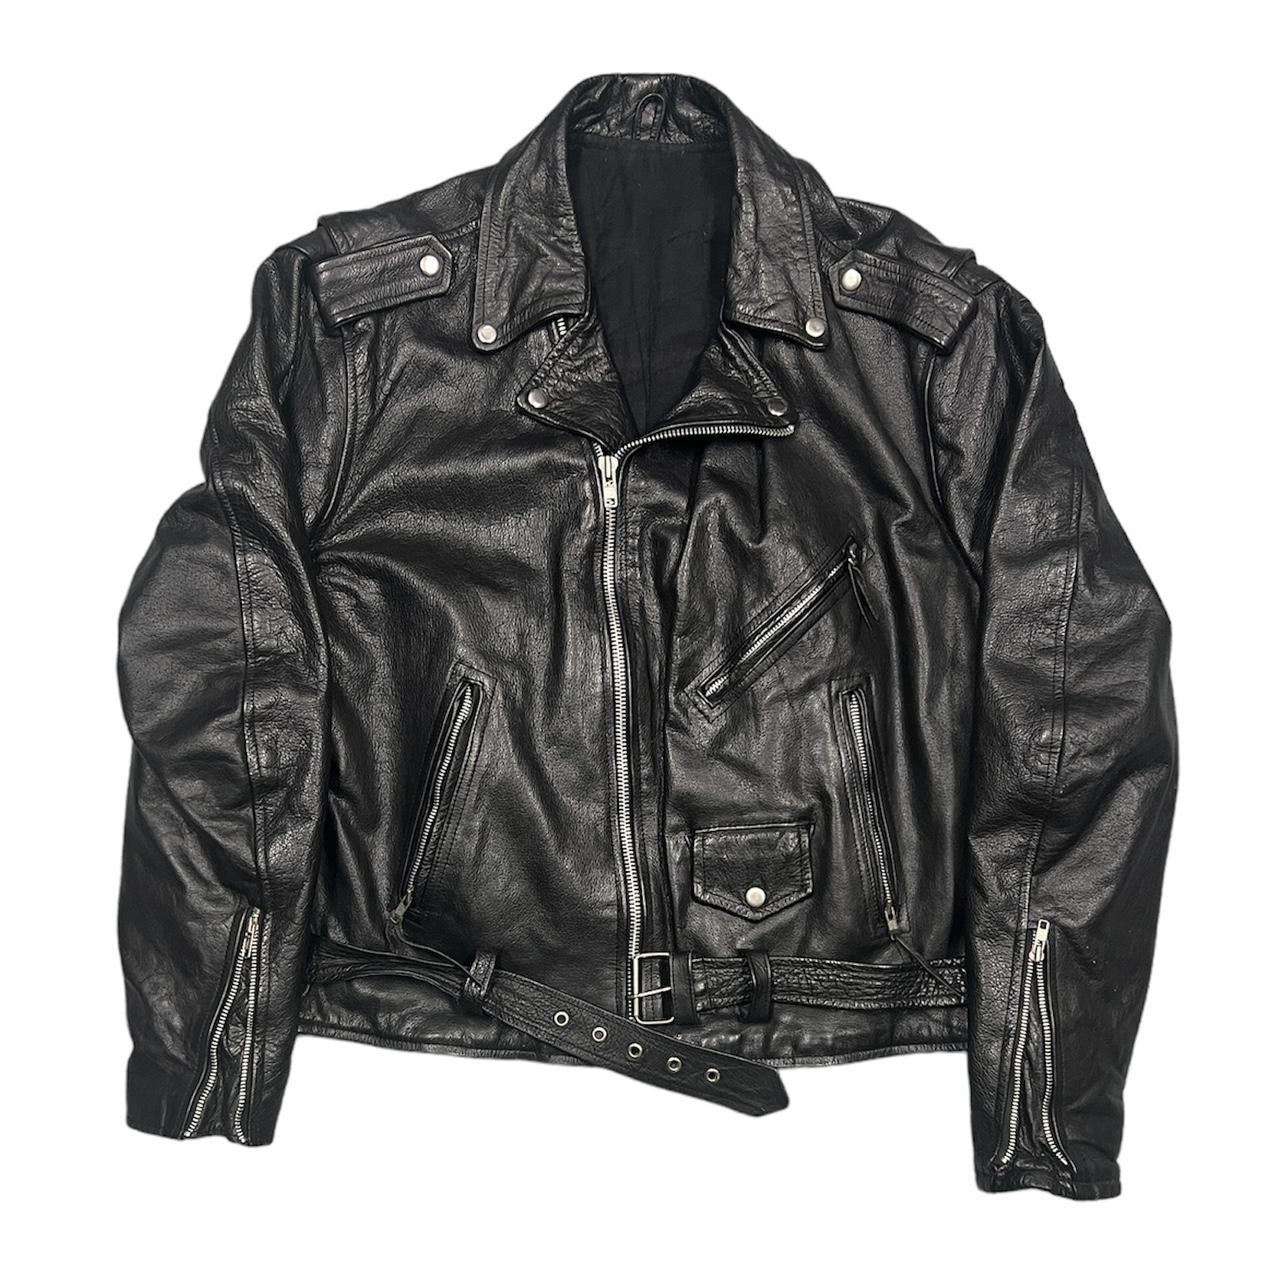 Supreme Leather Jacket - RockStar Jacket